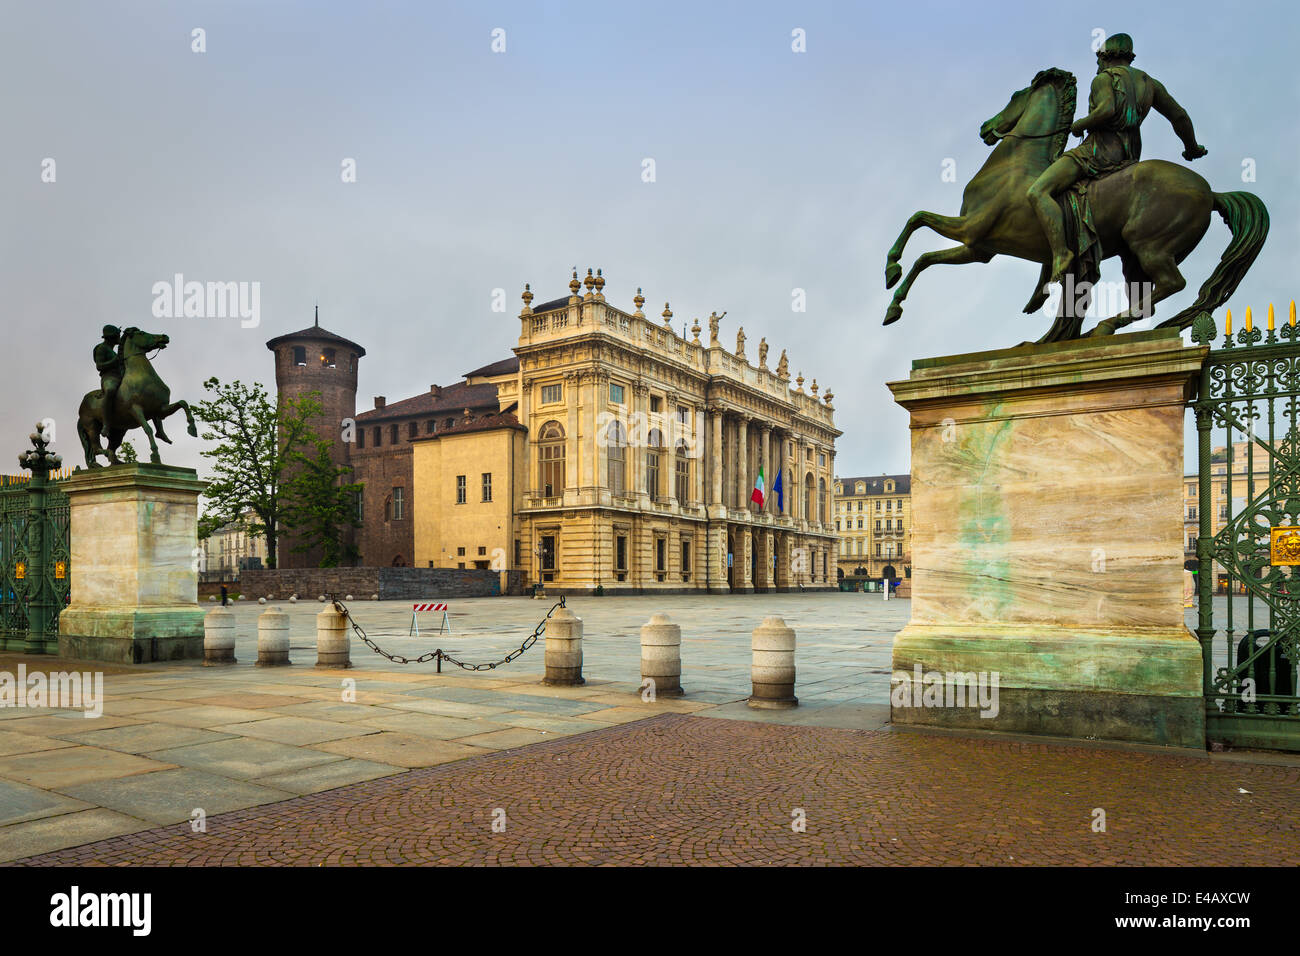 Der Palazzo Madama, der durch den Eingang zum Innenhof des Palazzo reale, Turin, Italien, gesehen wird. Stockfoto